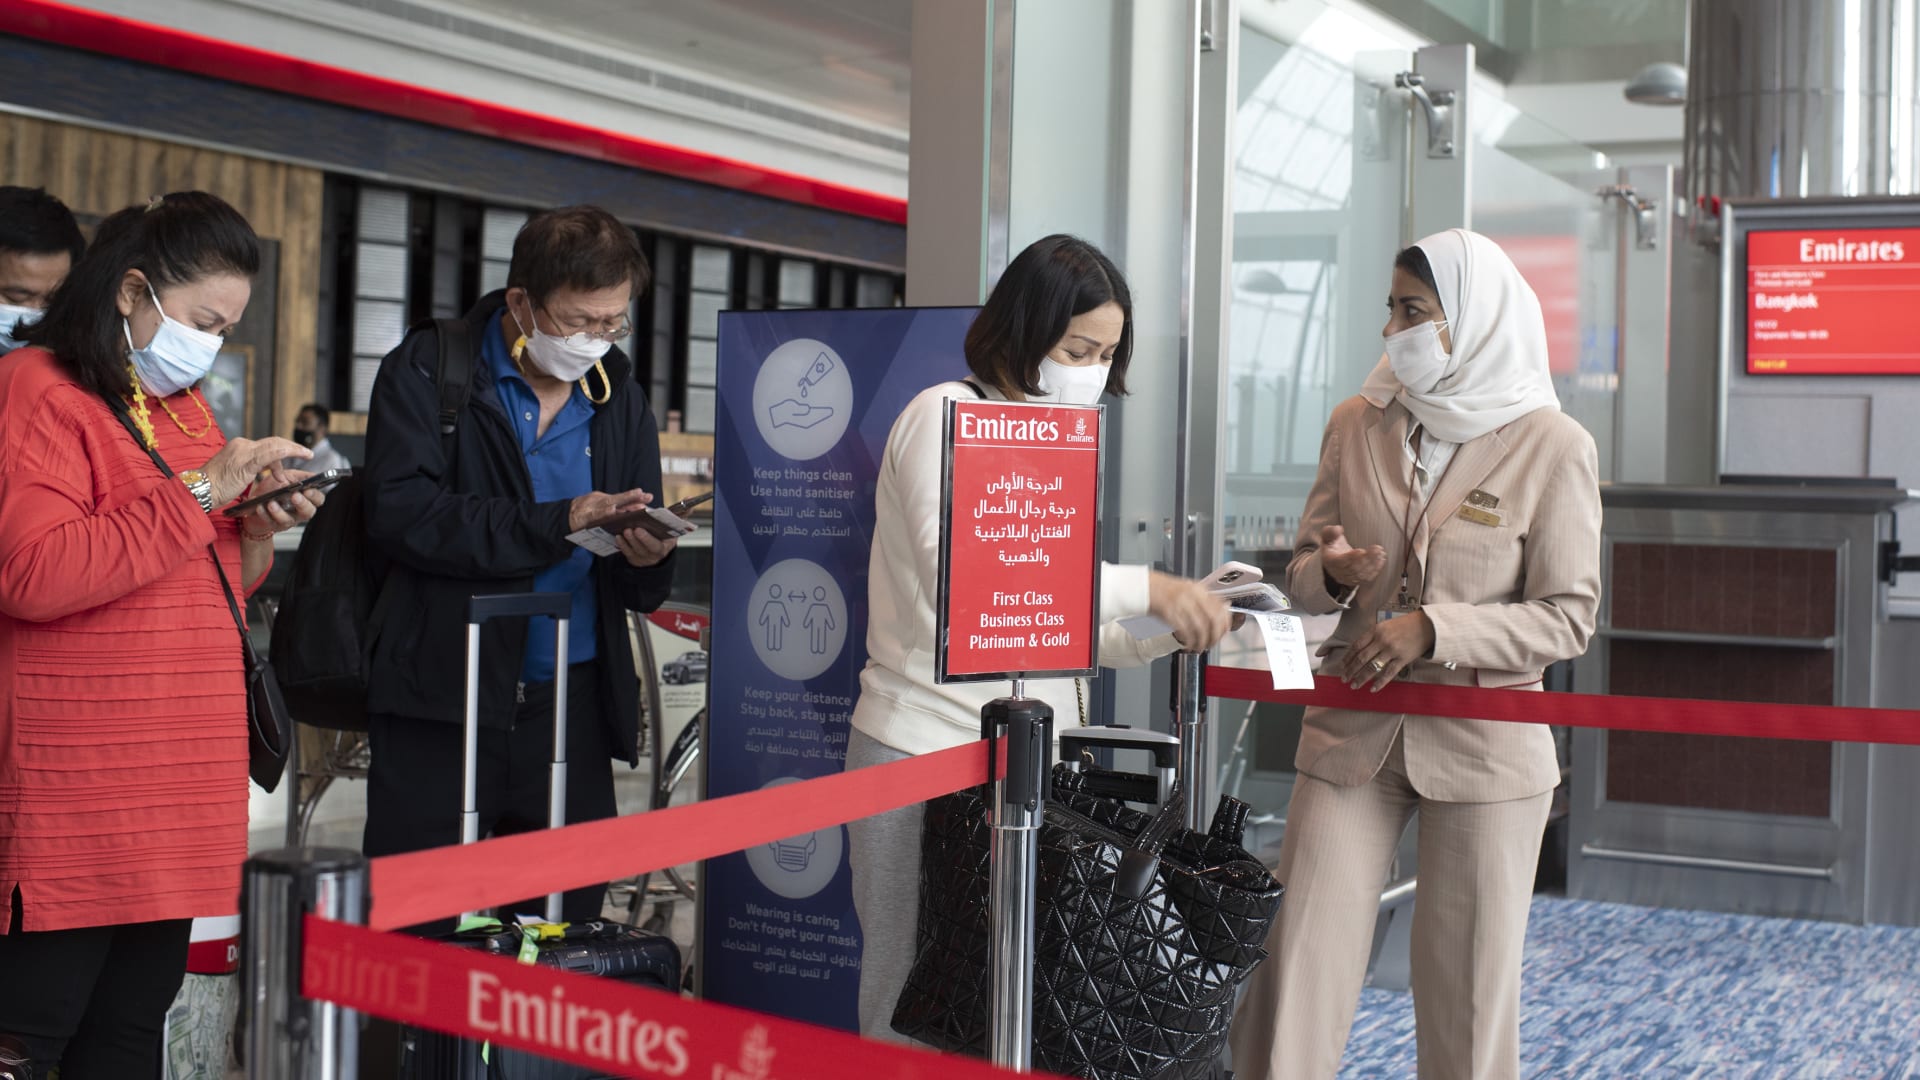 الإمارات توضح اشتراطات سفر مواطني الدولة تبعًا لقرار منع سفر غير المطعمين